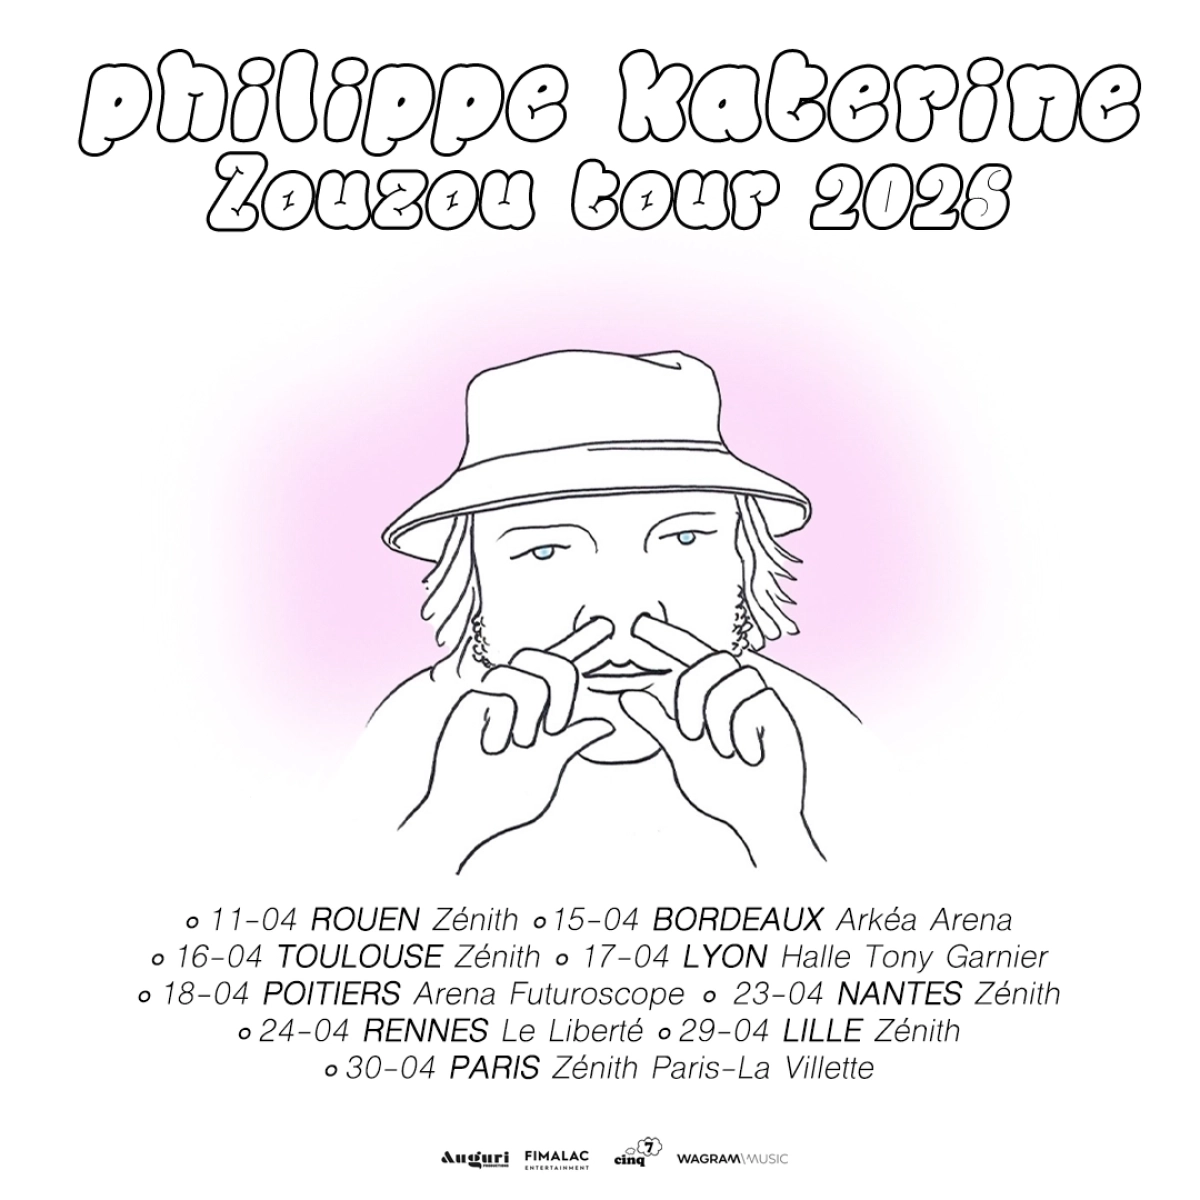 Philippe Katerine al Arena Futuroscope Tickets